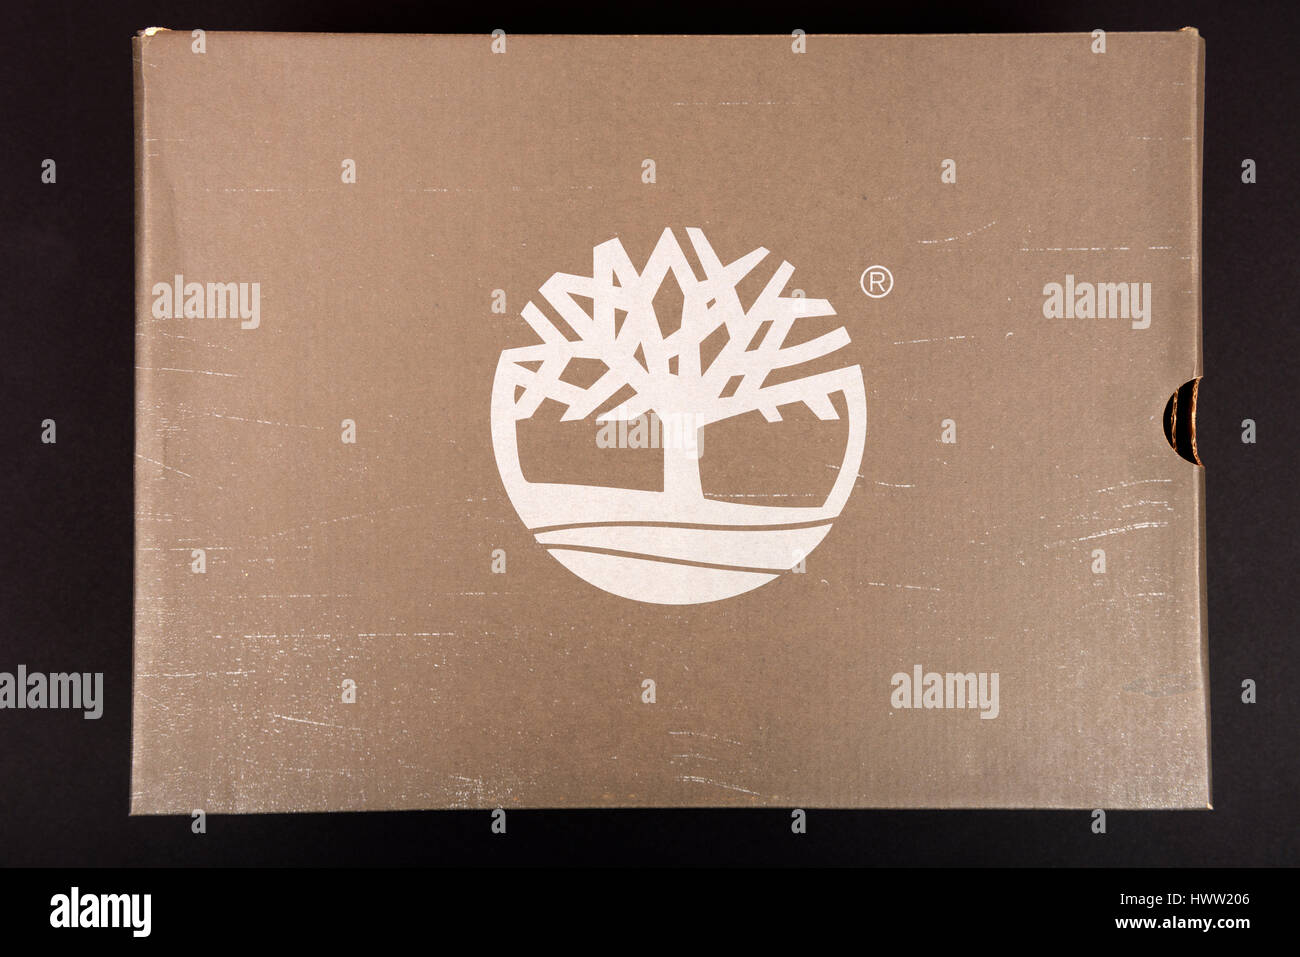 Timberland shoe box Stock Photo - Alamy